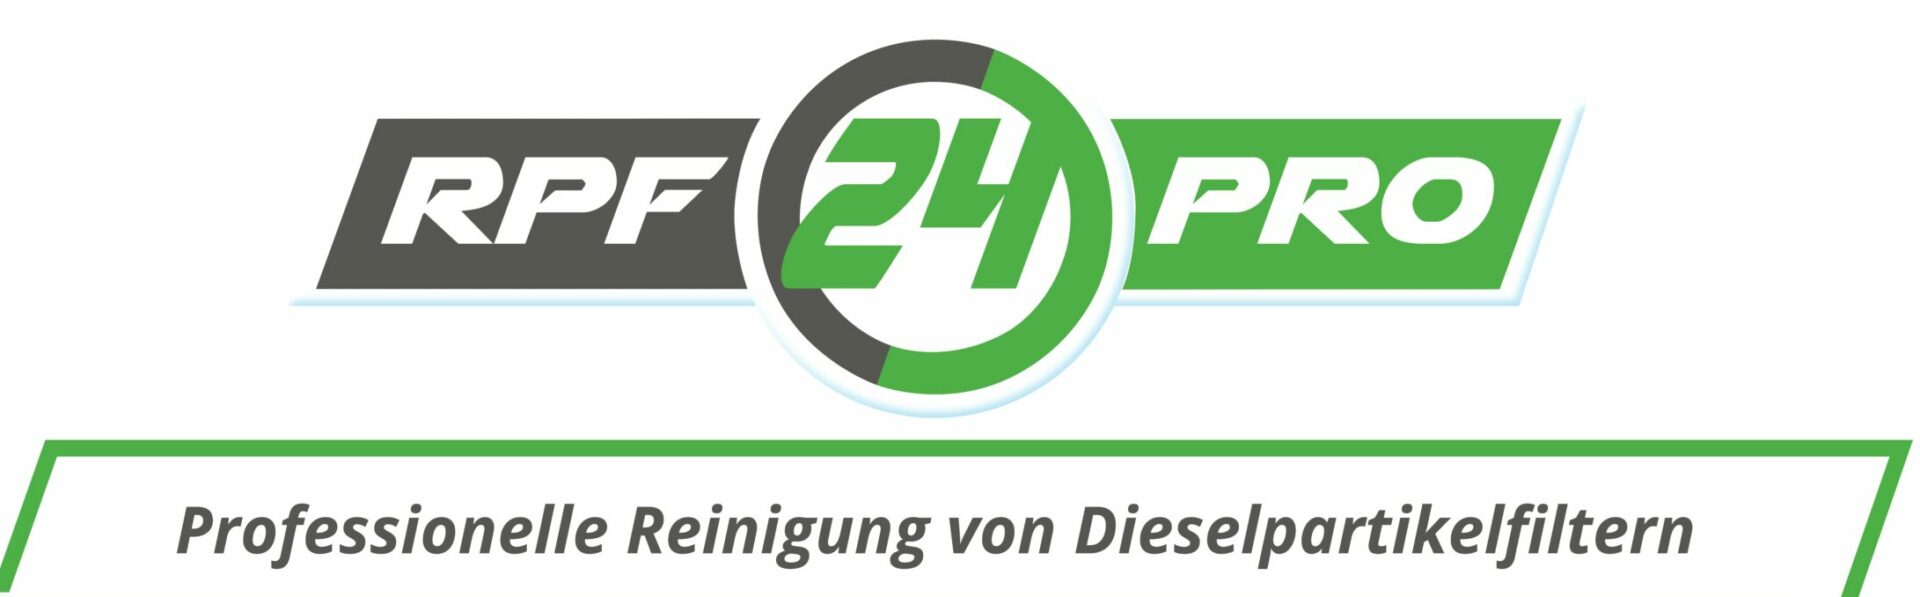 RPF24PRO DPF Reinigung VW Mercedes Fiat BMW Wertingen